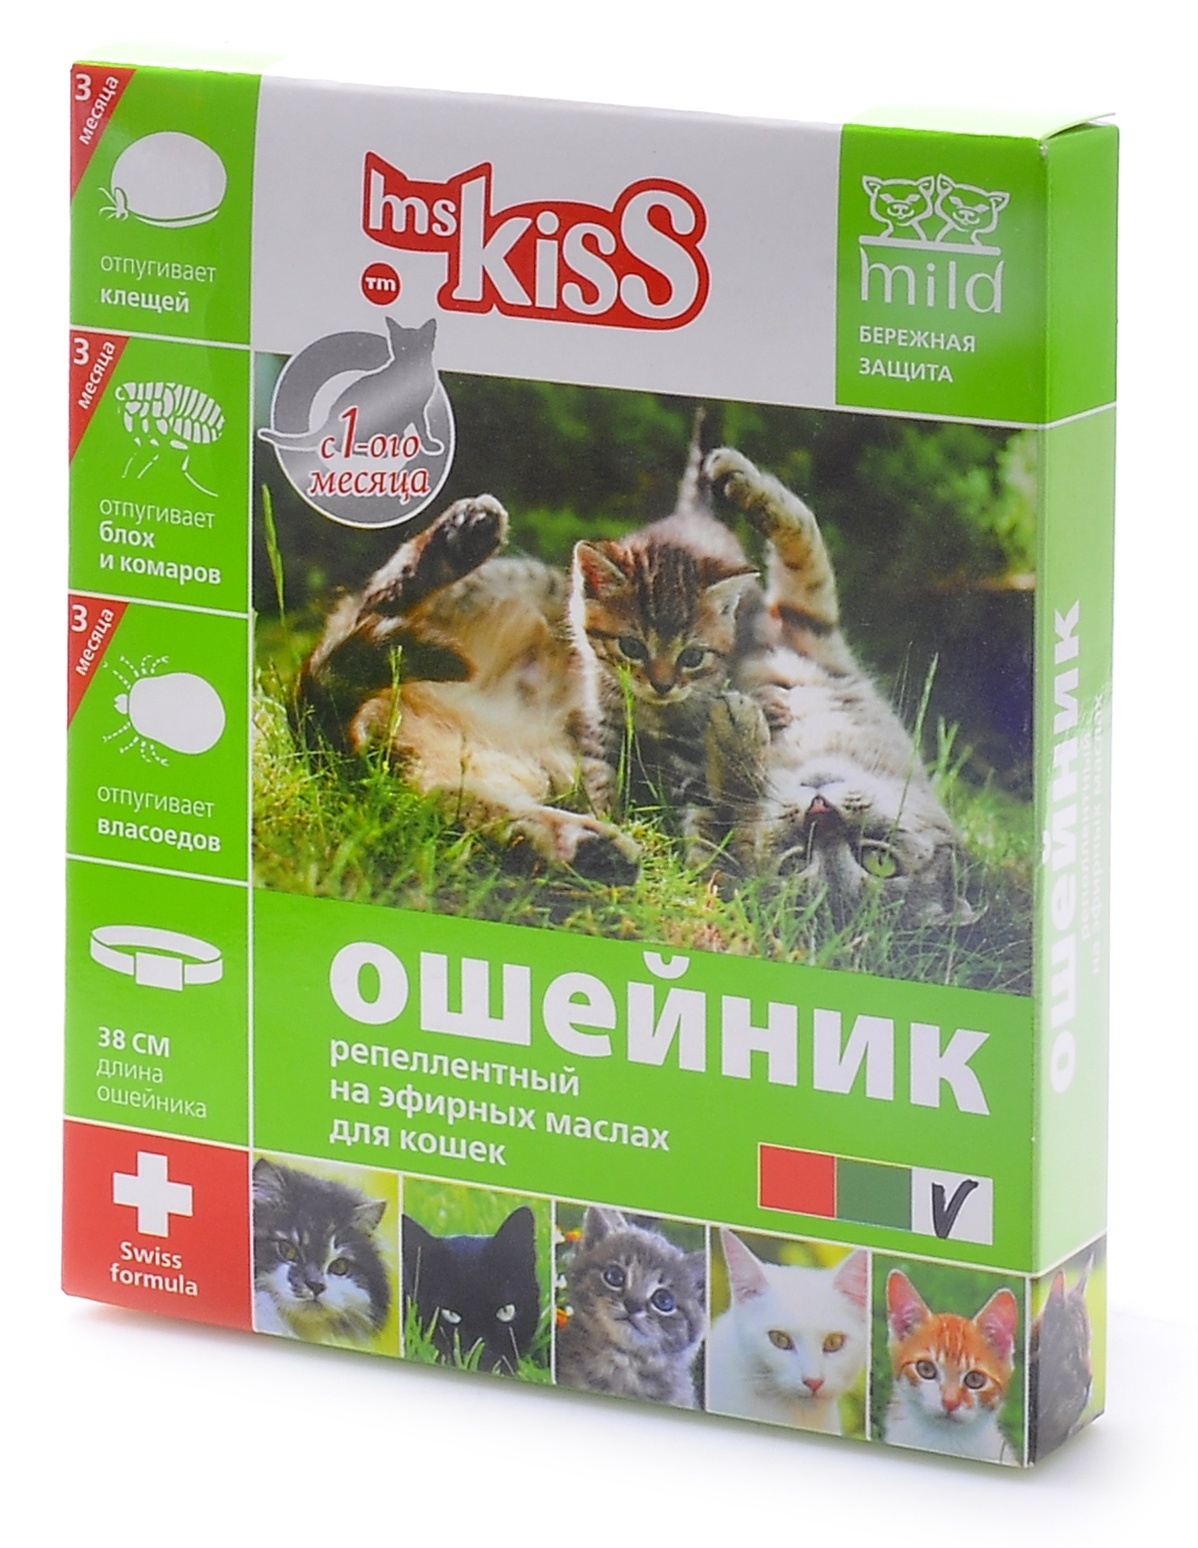 Ms.Kiss ошейник от блох, клещей, комаров для котят с 4 недель и кошек, 38 см (38 г)